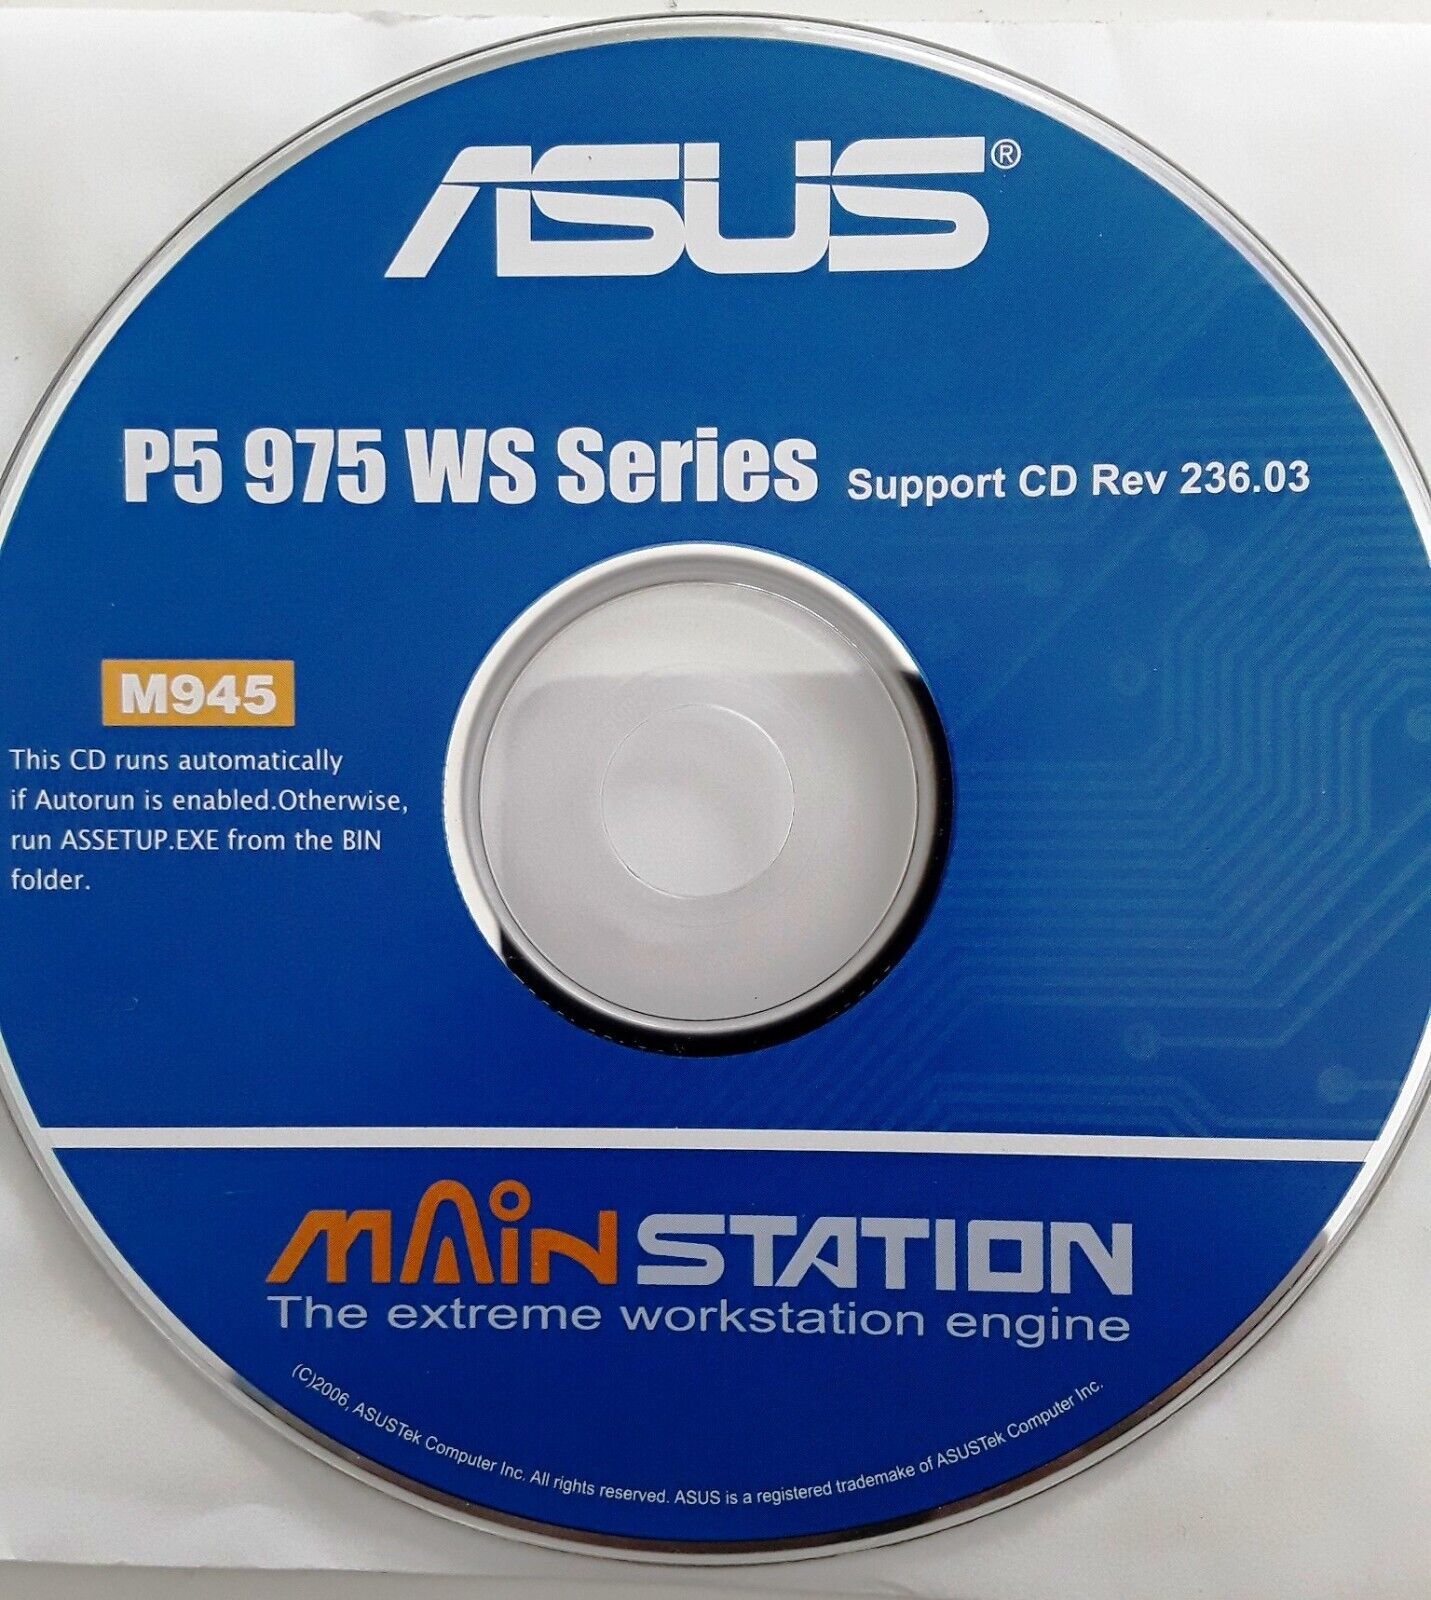 Asus P5 975 WS Series Motherboard Drivers Software CD & Bonus Multimedia Apps